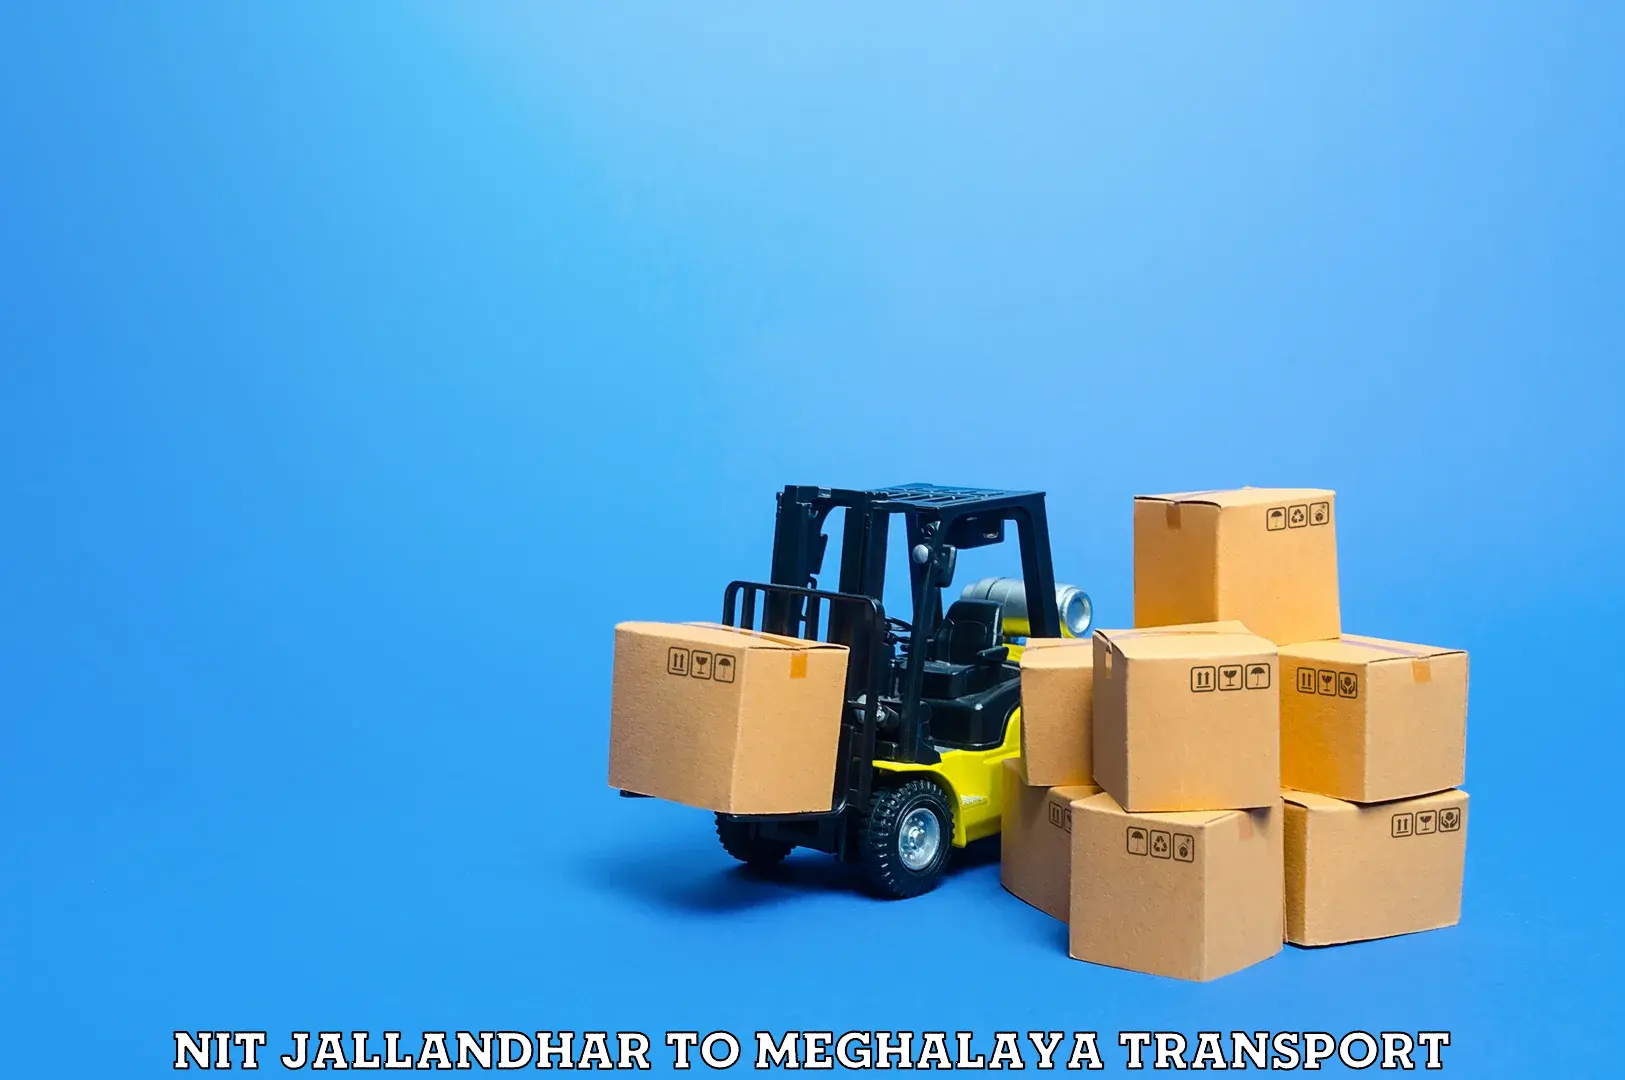 Furniture transport service NIT Jallandhar to Meghalaya